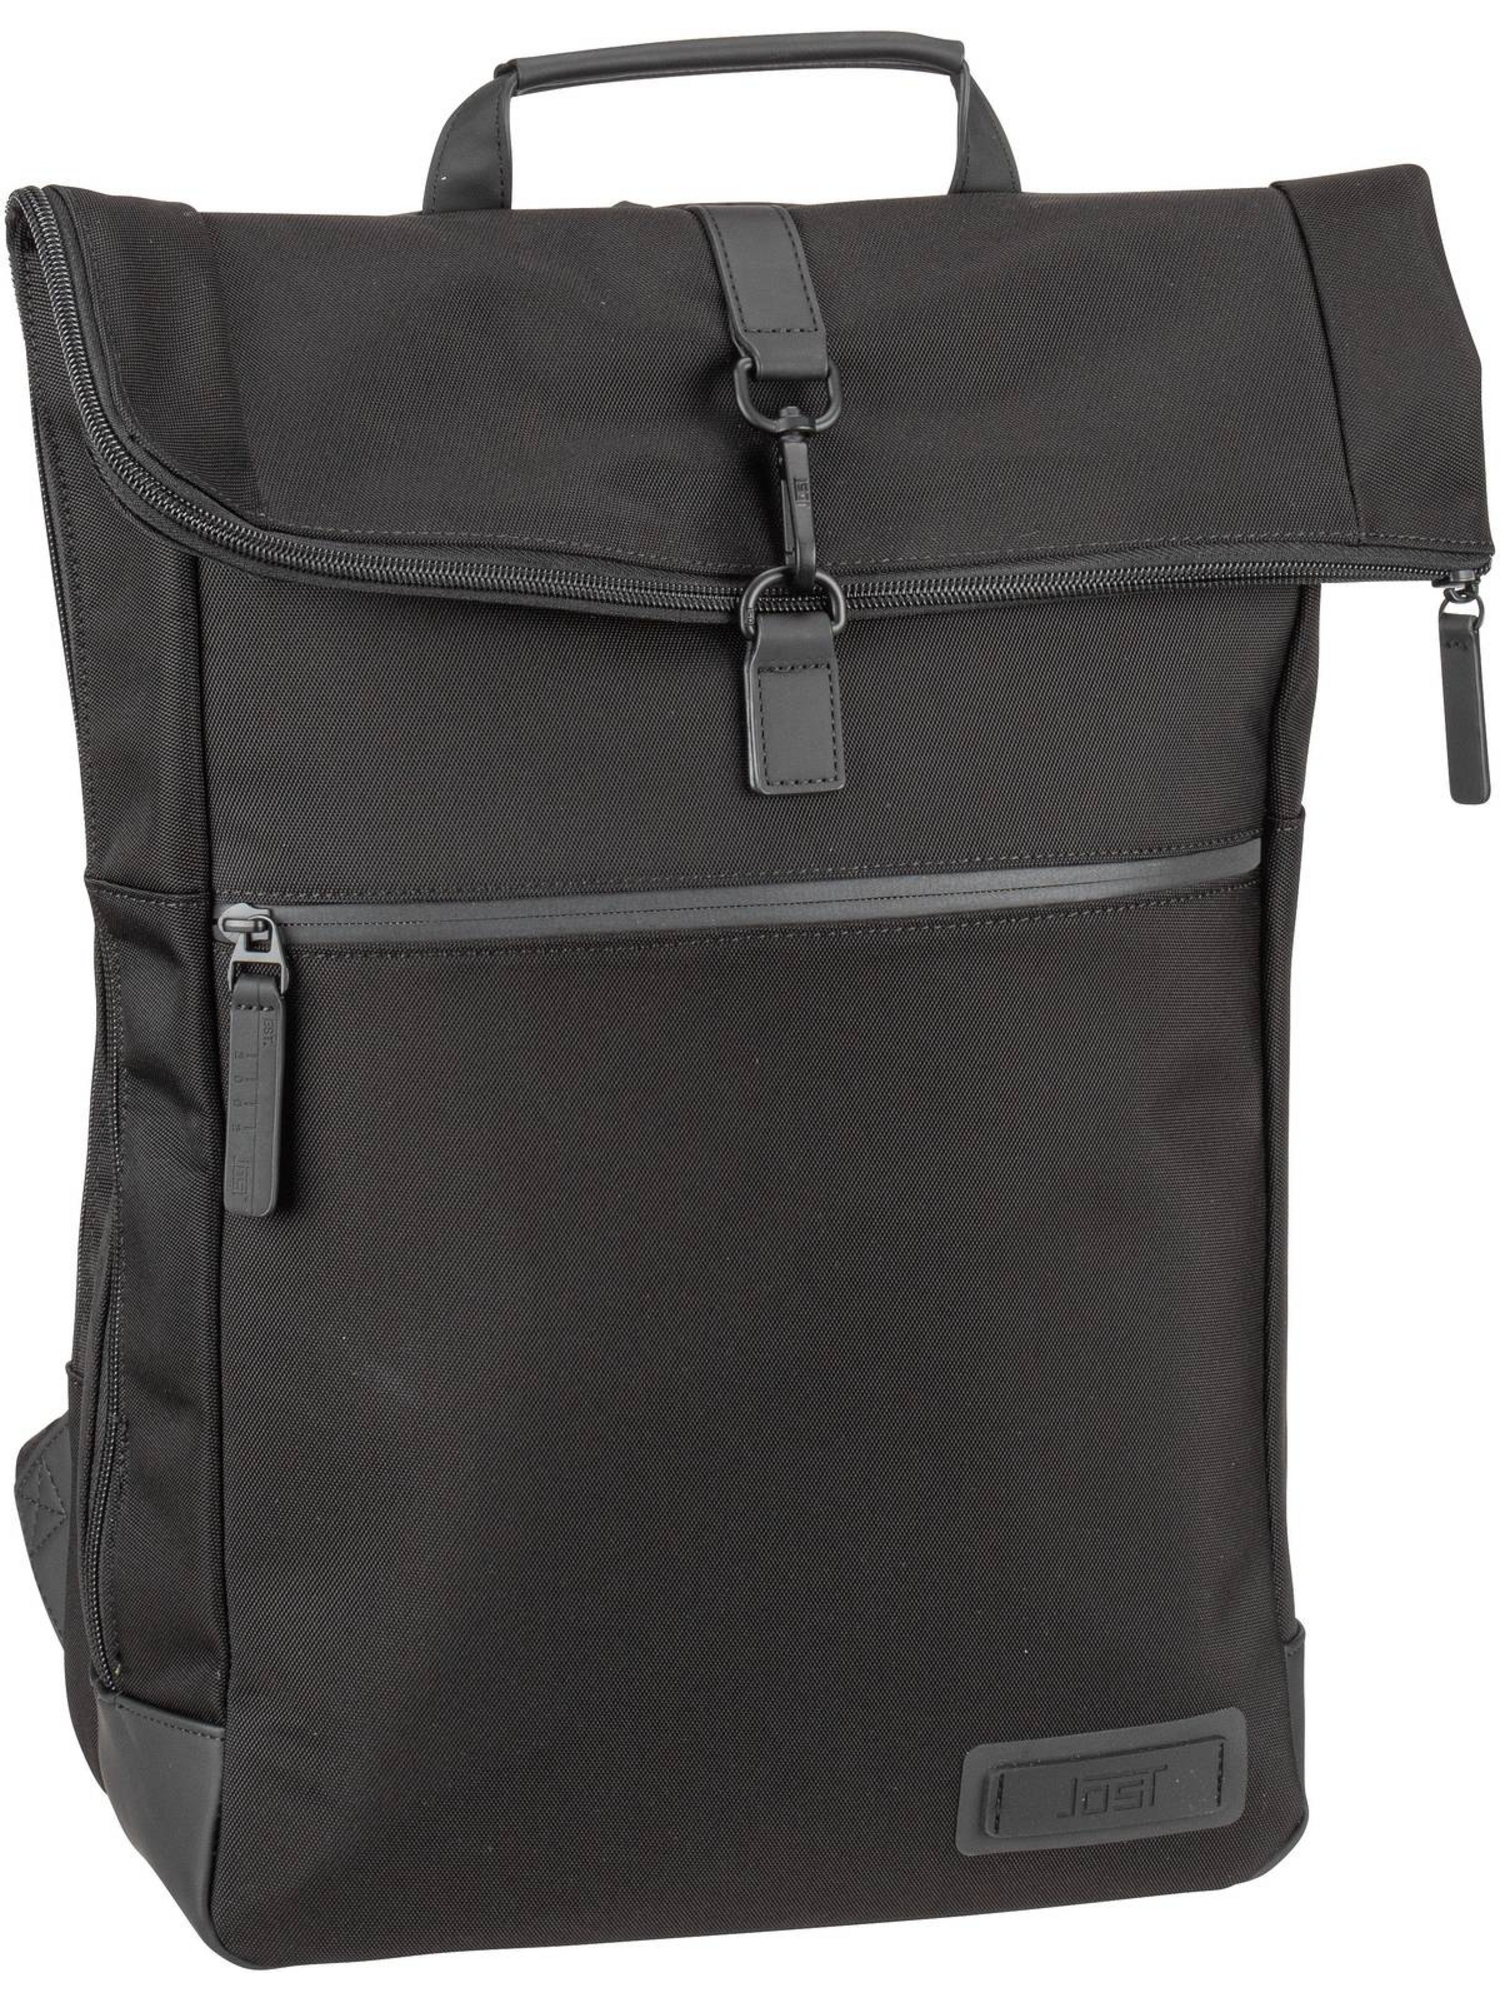 Рюкзак Jost Laptop Tallinn Backpack Courier, черный